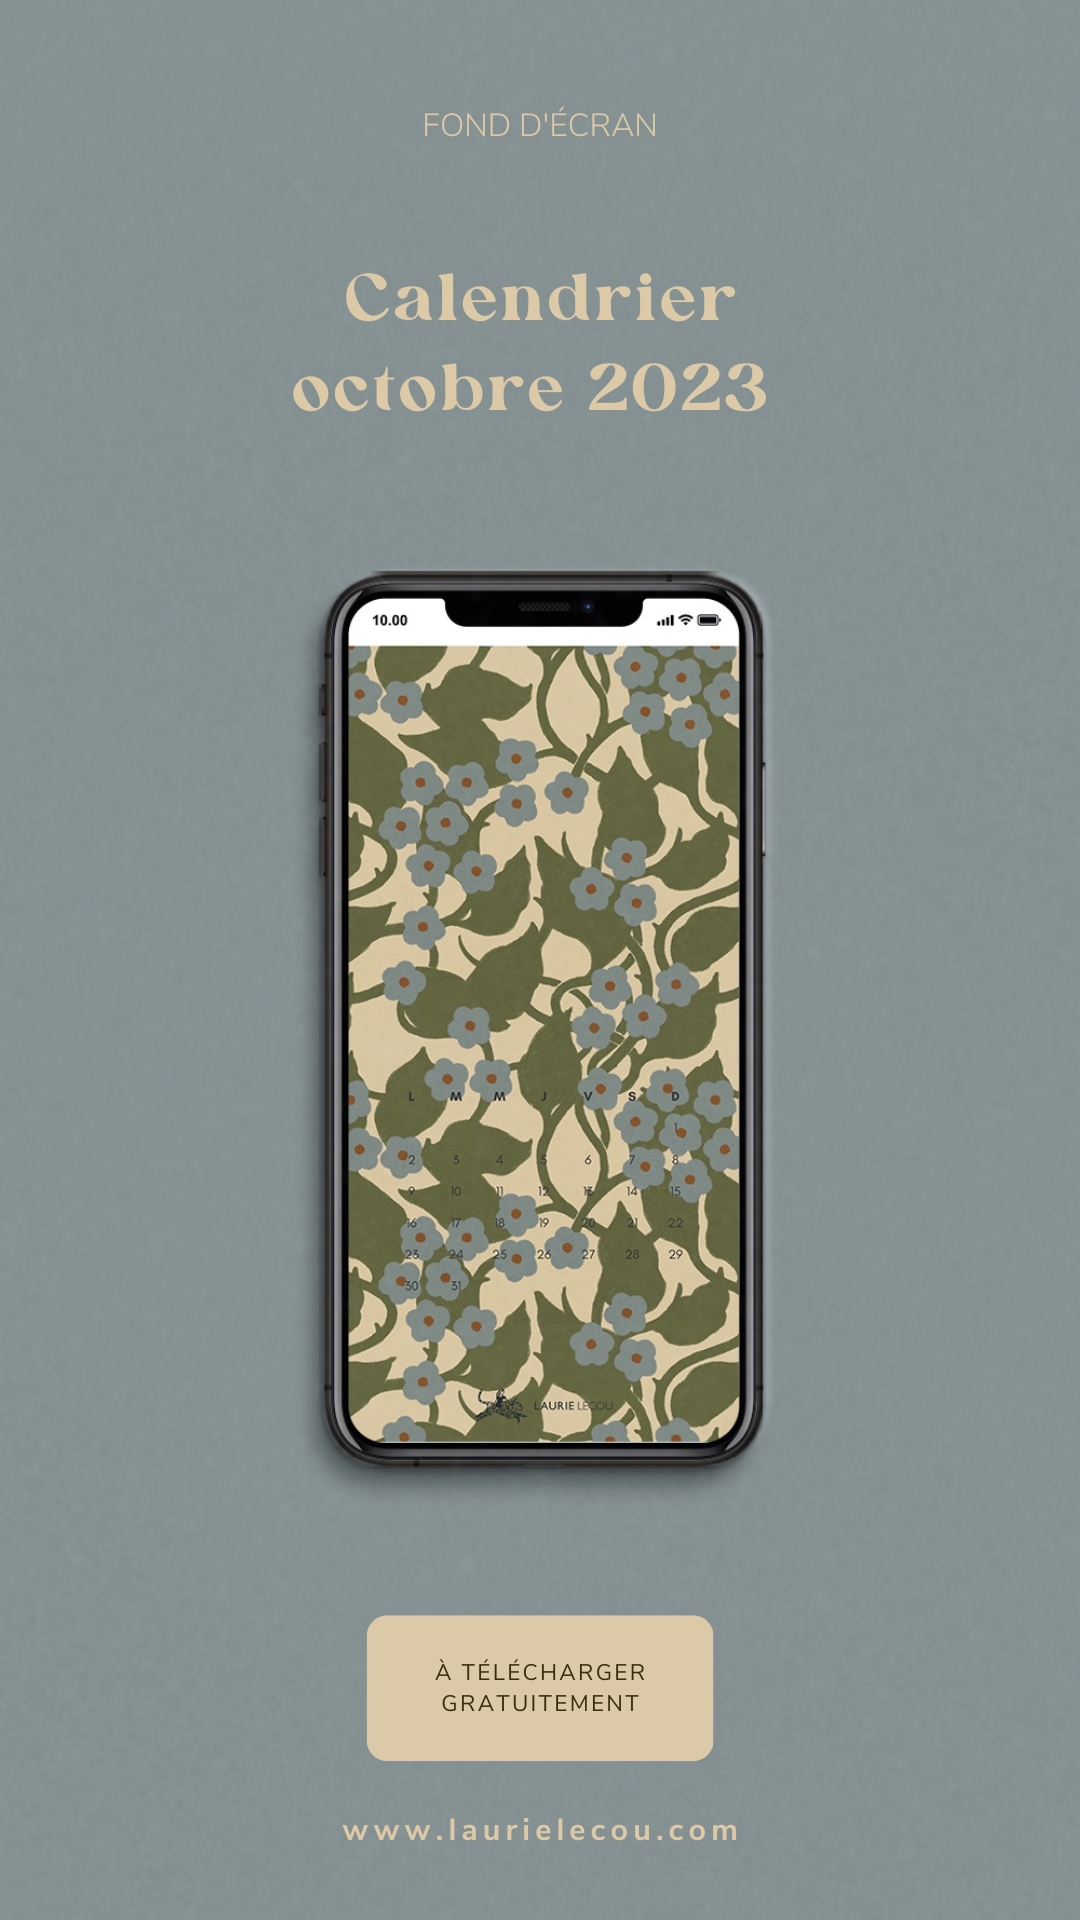 Fond d'écran de téléphone avec un motif floral aux tons bleus et verts